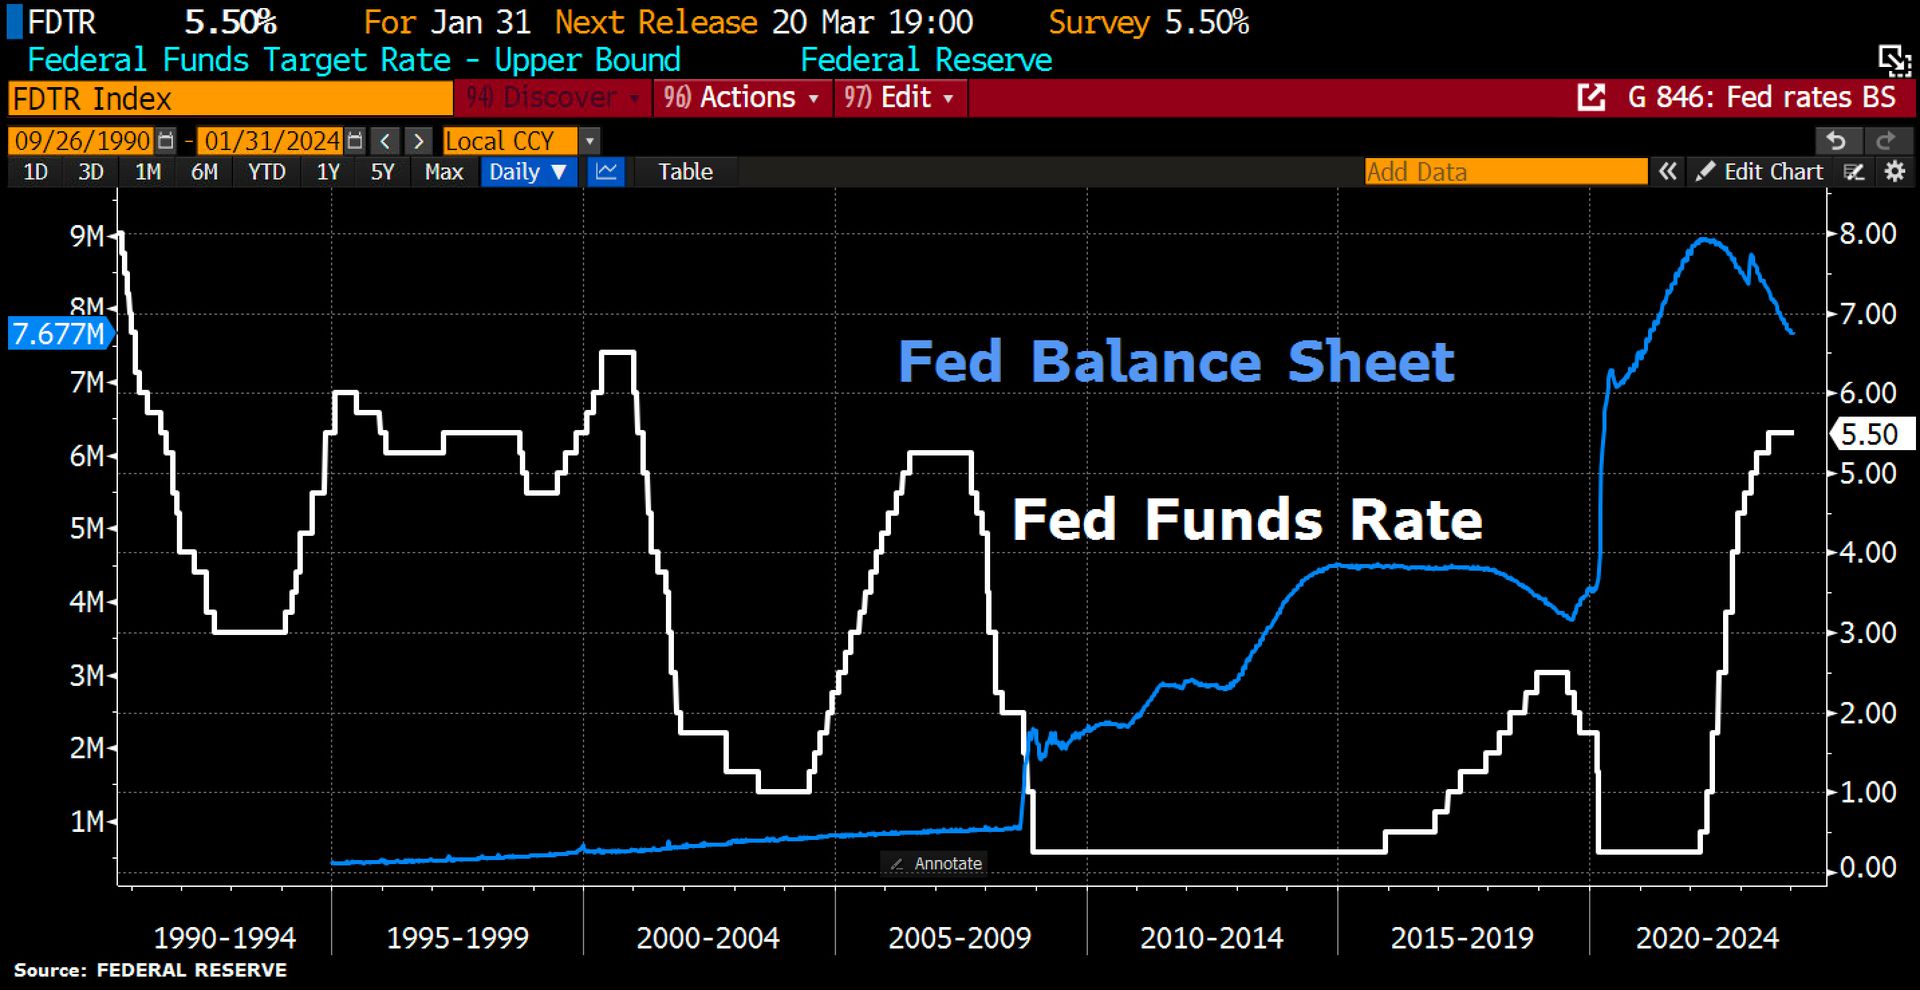 Das Diagramm zeigt die Entwicklung der Bilanz der Federal Reserve und des Federal Funds Target Rate über einen Zeitraum von 1990 bis 2024, mit einer deutlichen Zunahme beider Werte in den letzten Jahren.